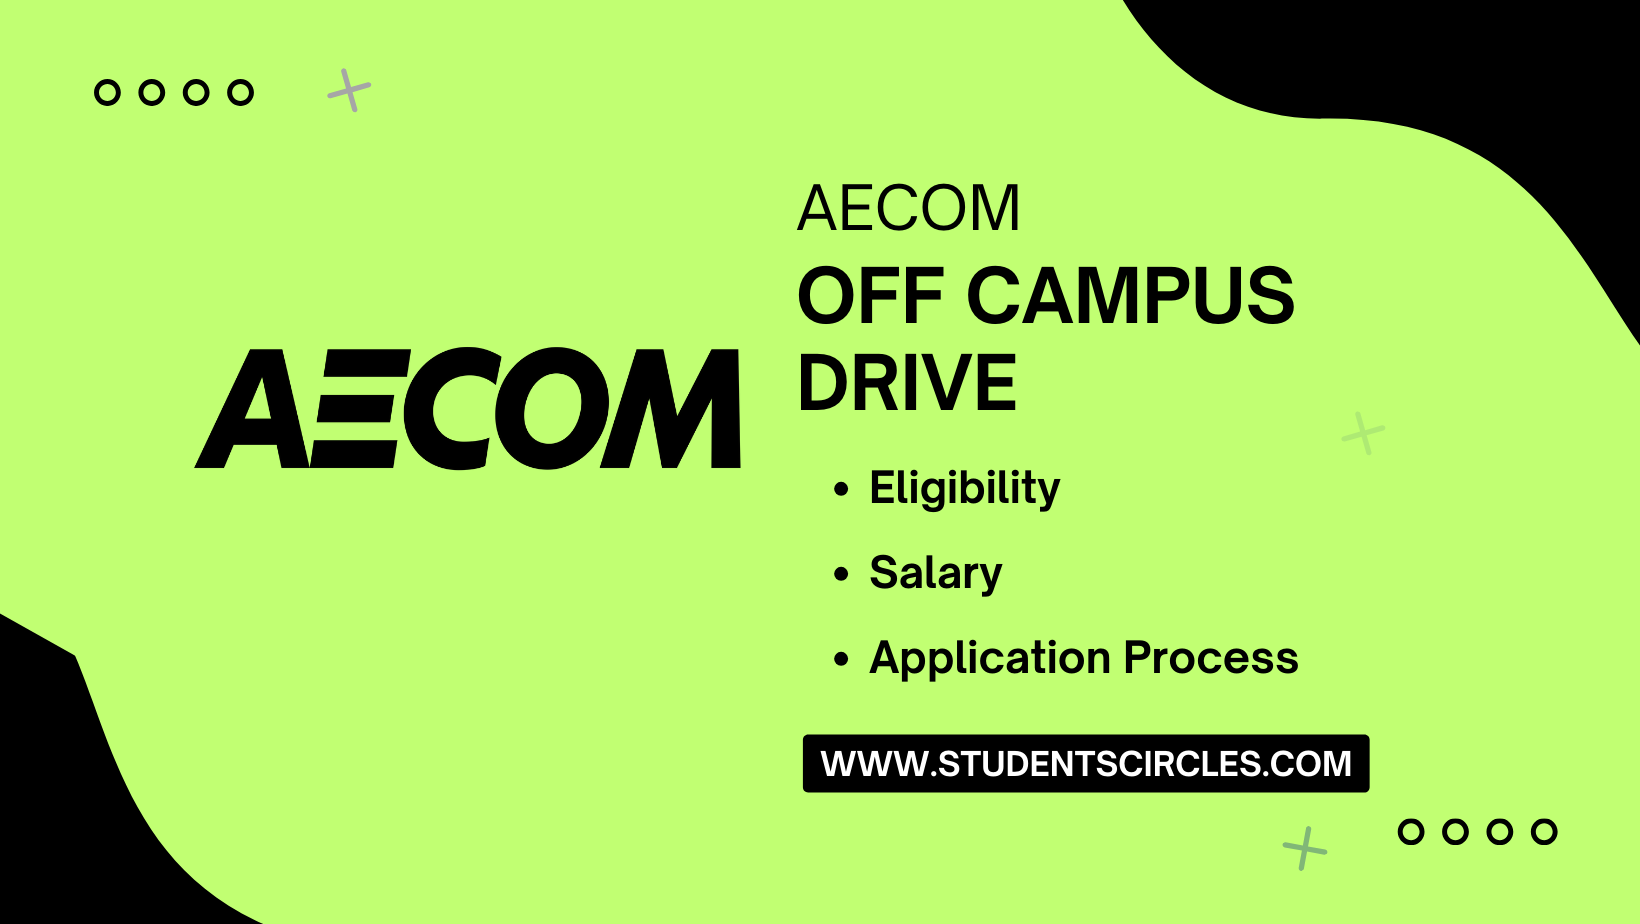 AECOM Off Campus Drive